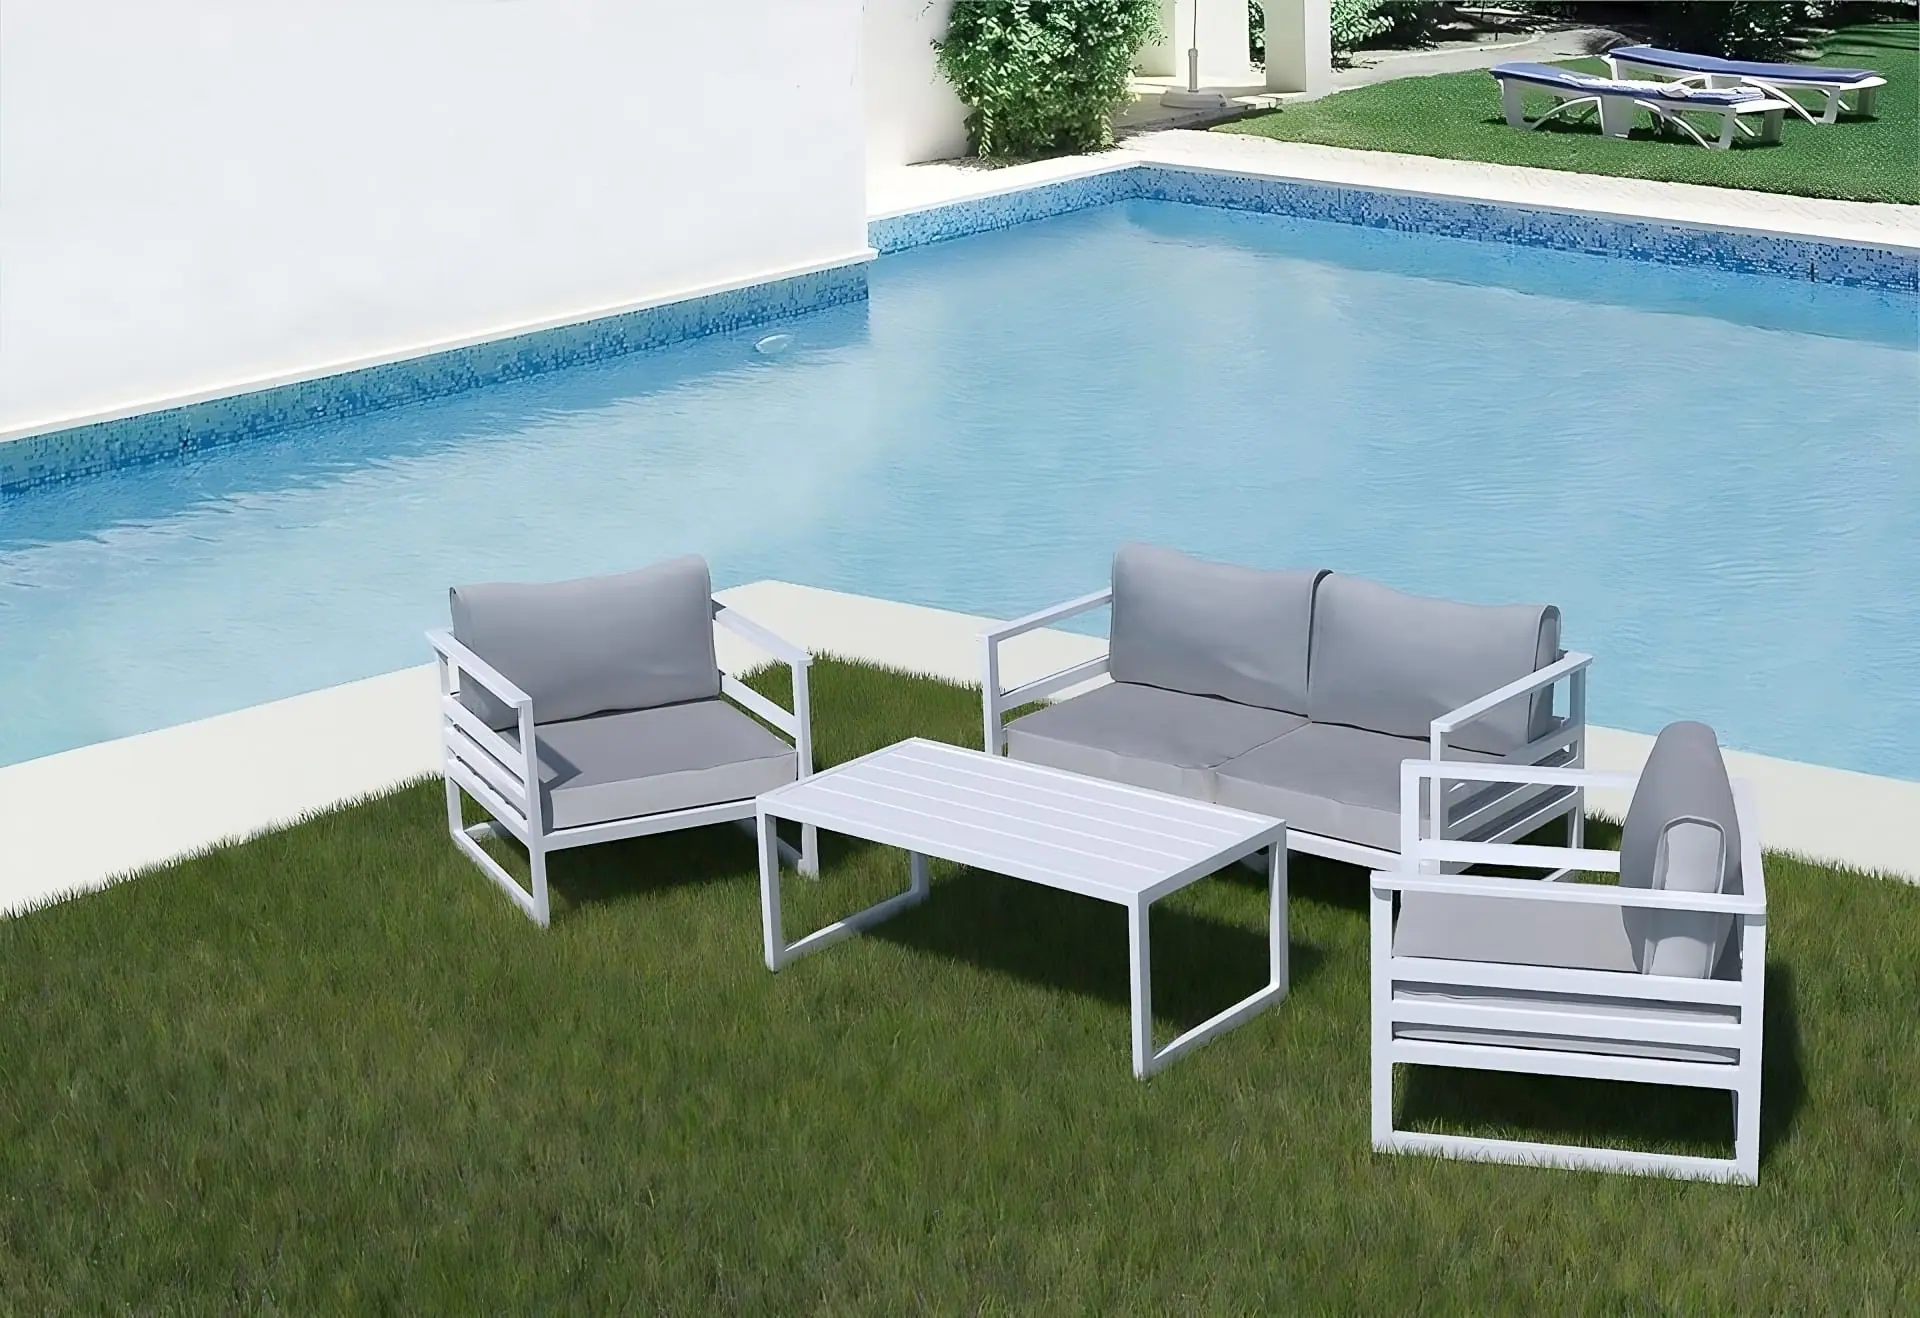 conva-chillout-aluminio-outdoor-sofa-lounge-aluminium-collection-4